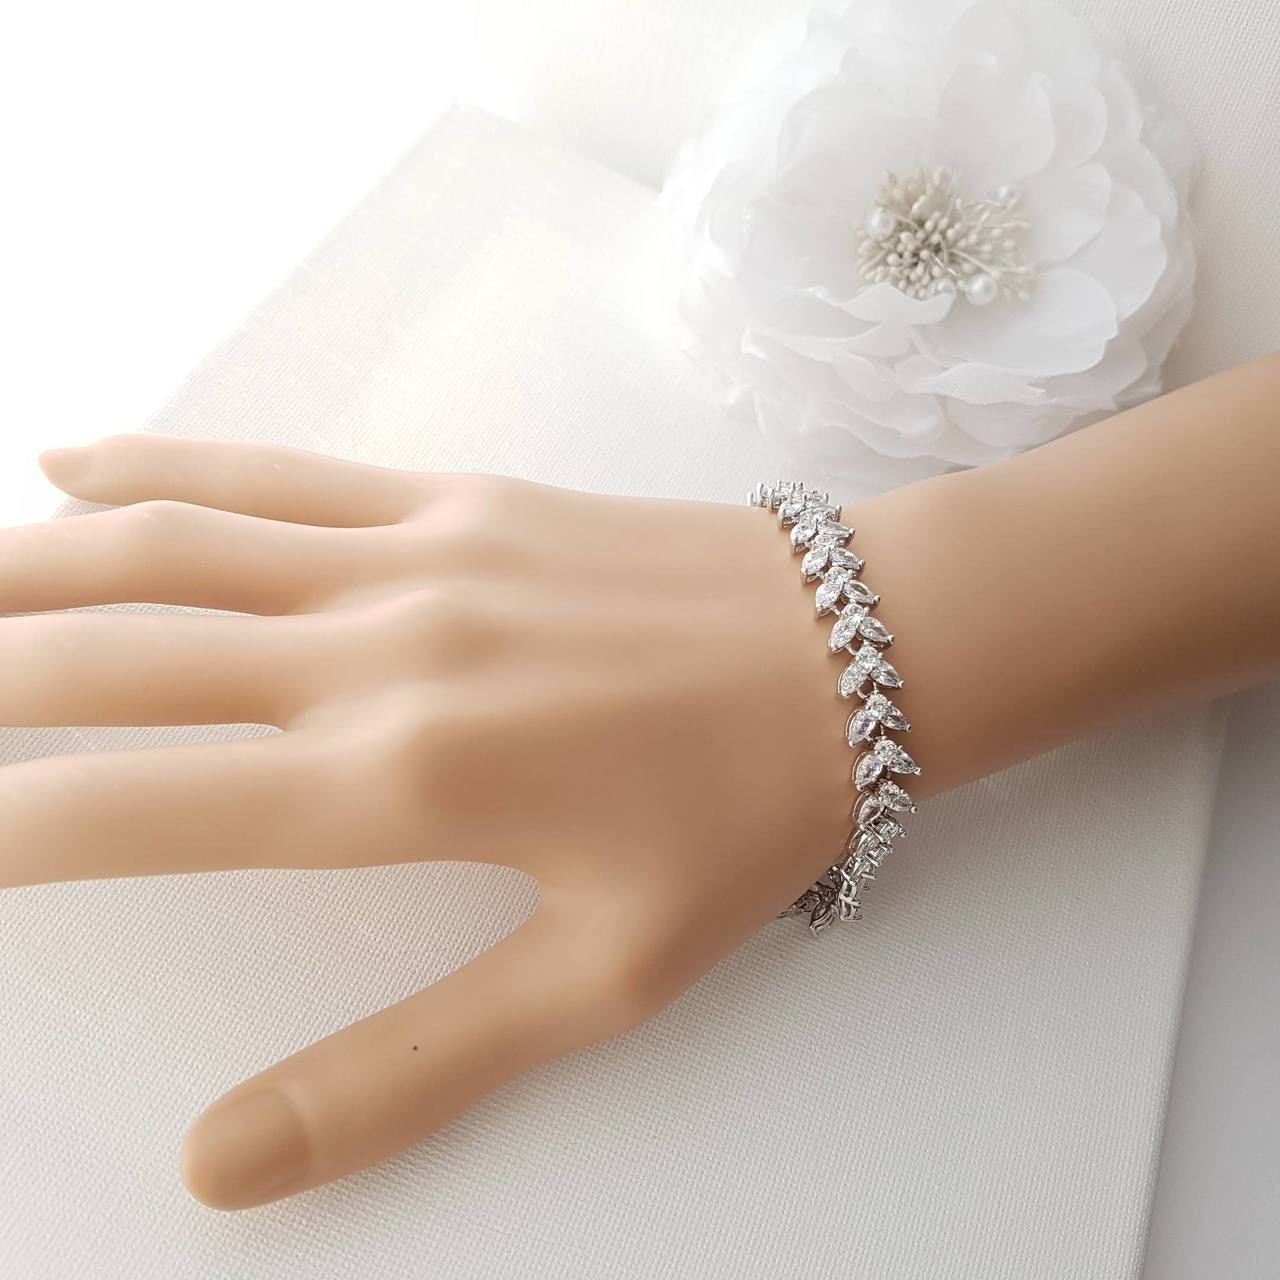 Rose Gold Bracelet for Wedding Formal Events-Katie